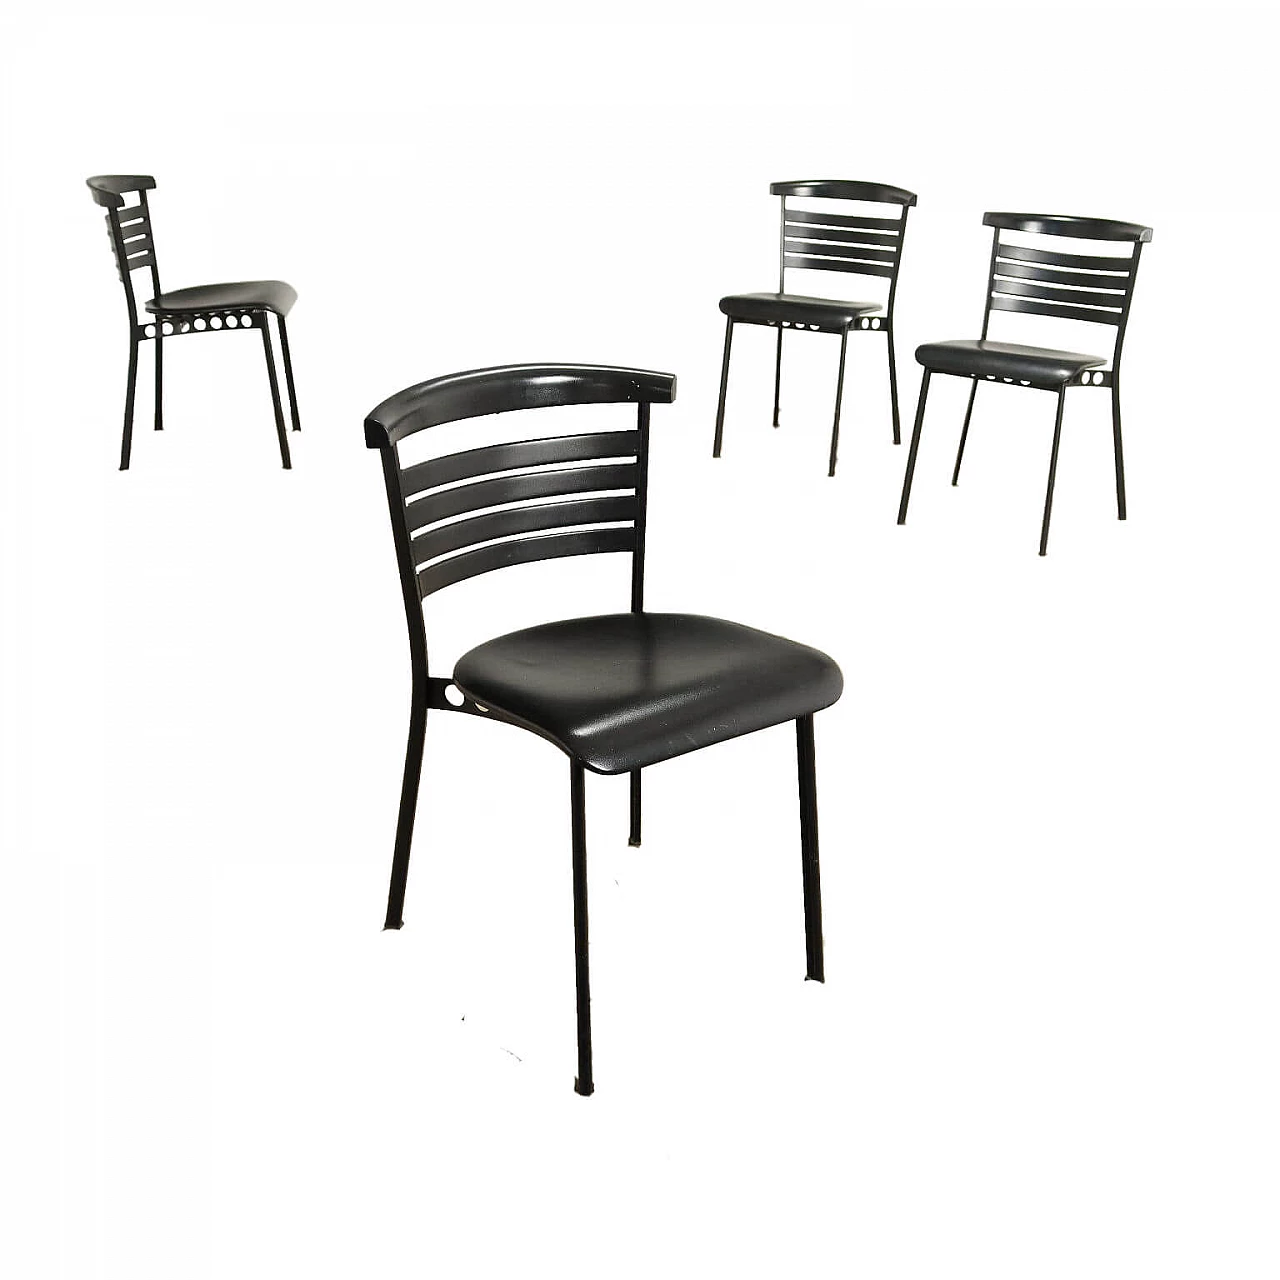 4 Lola Chairs by Mario Broggi and Michael Burkhardt for Sorgente dei Mobili, 1980s 1